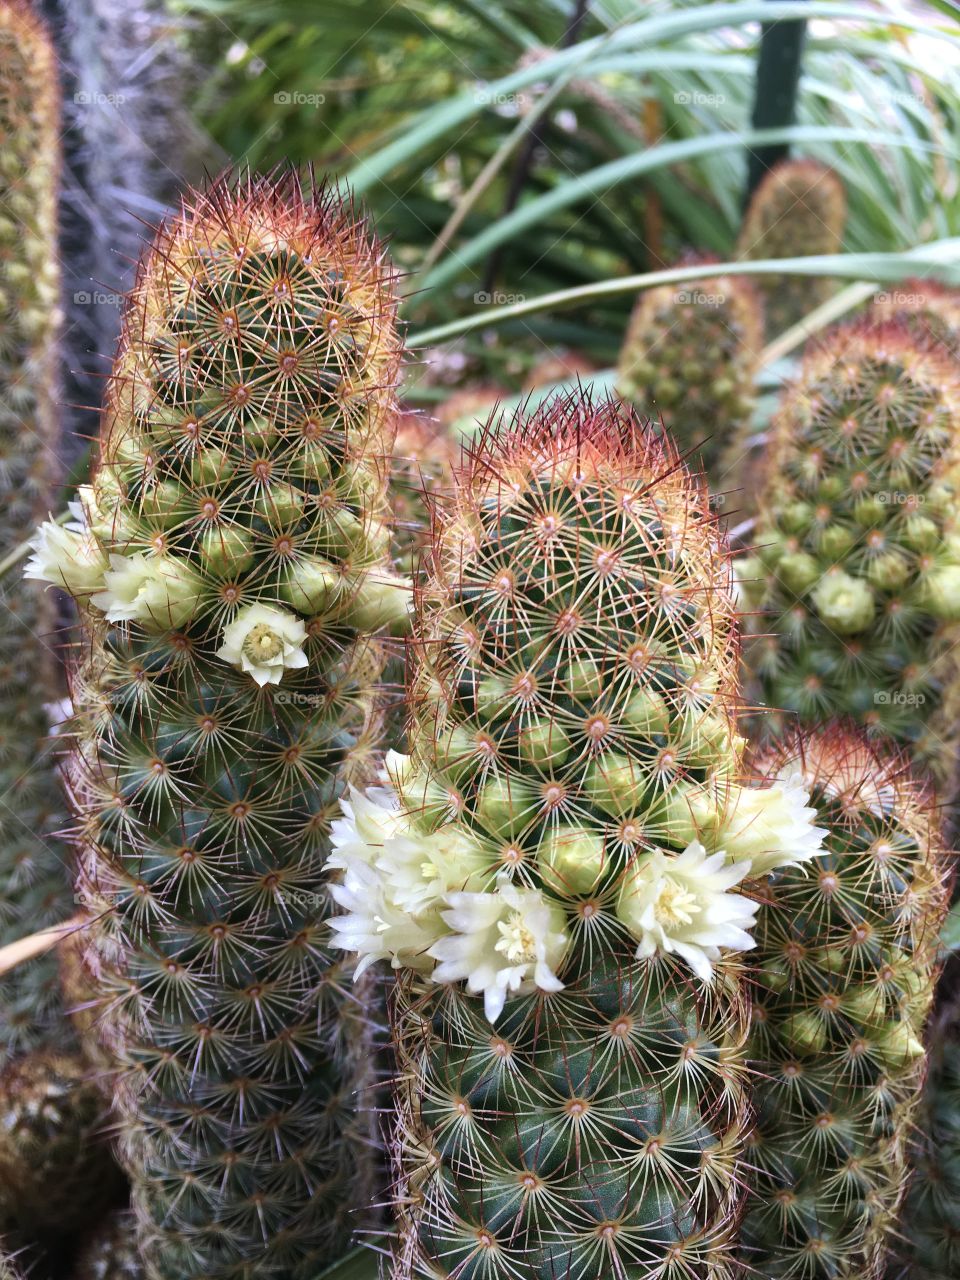 Tiny cactus flowers